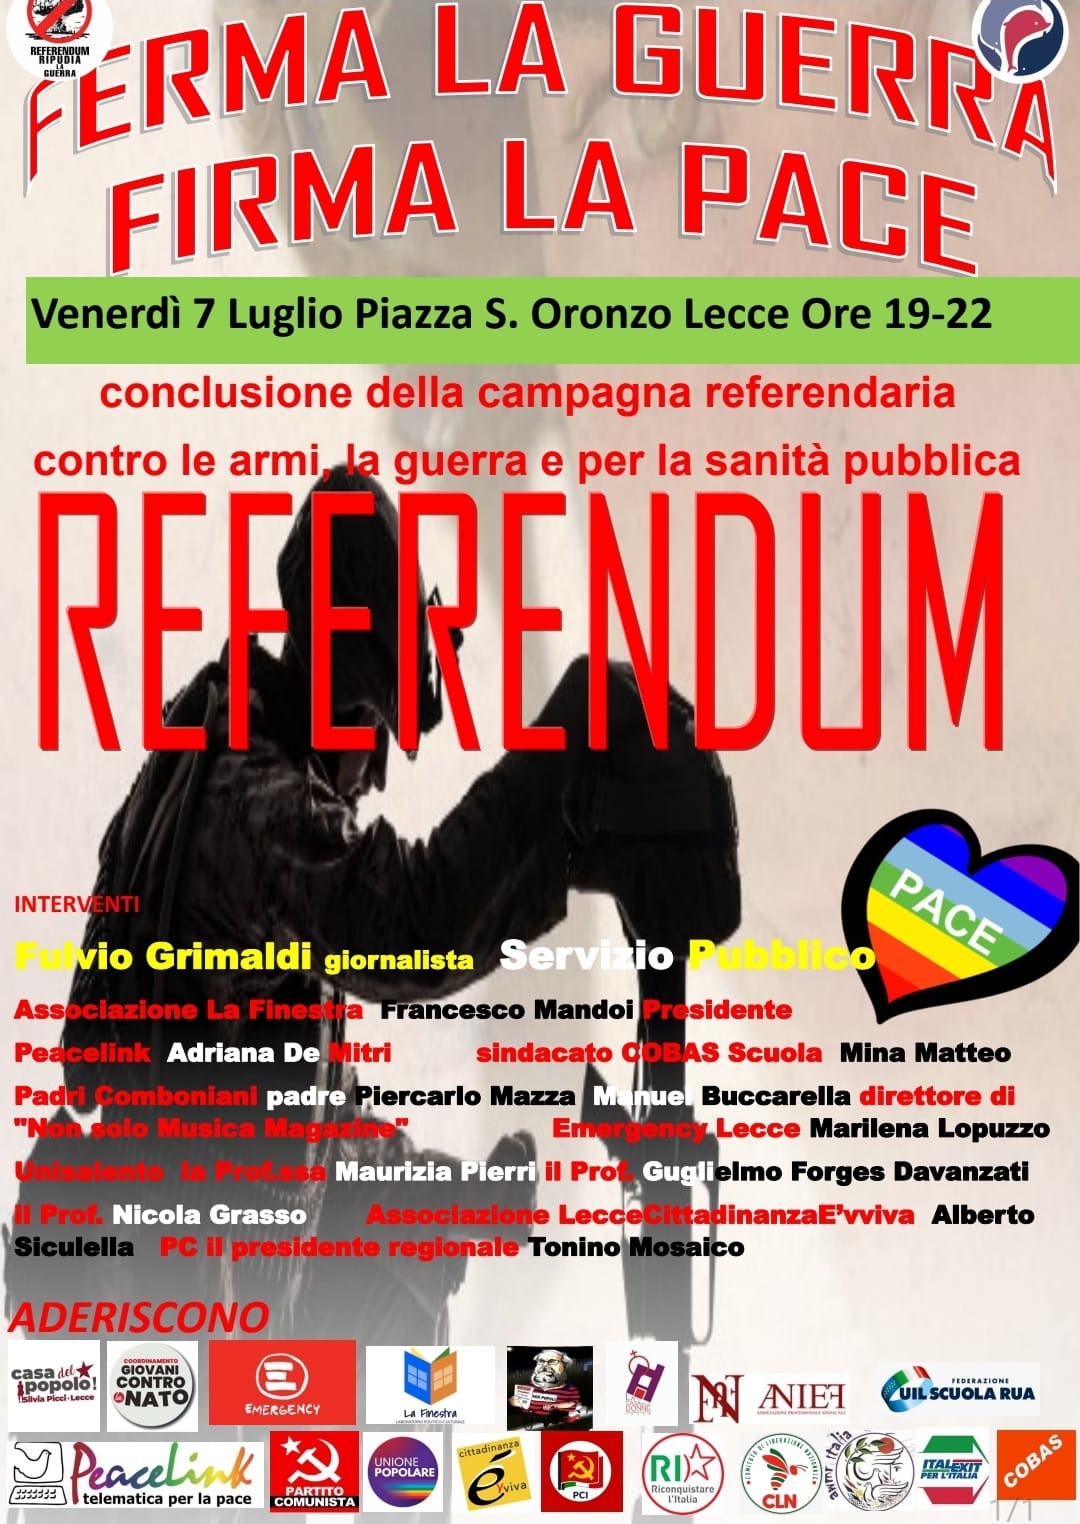 7 luglio, Lecce. Si conclude la campagna referendaria “Ripudia la guerra”.